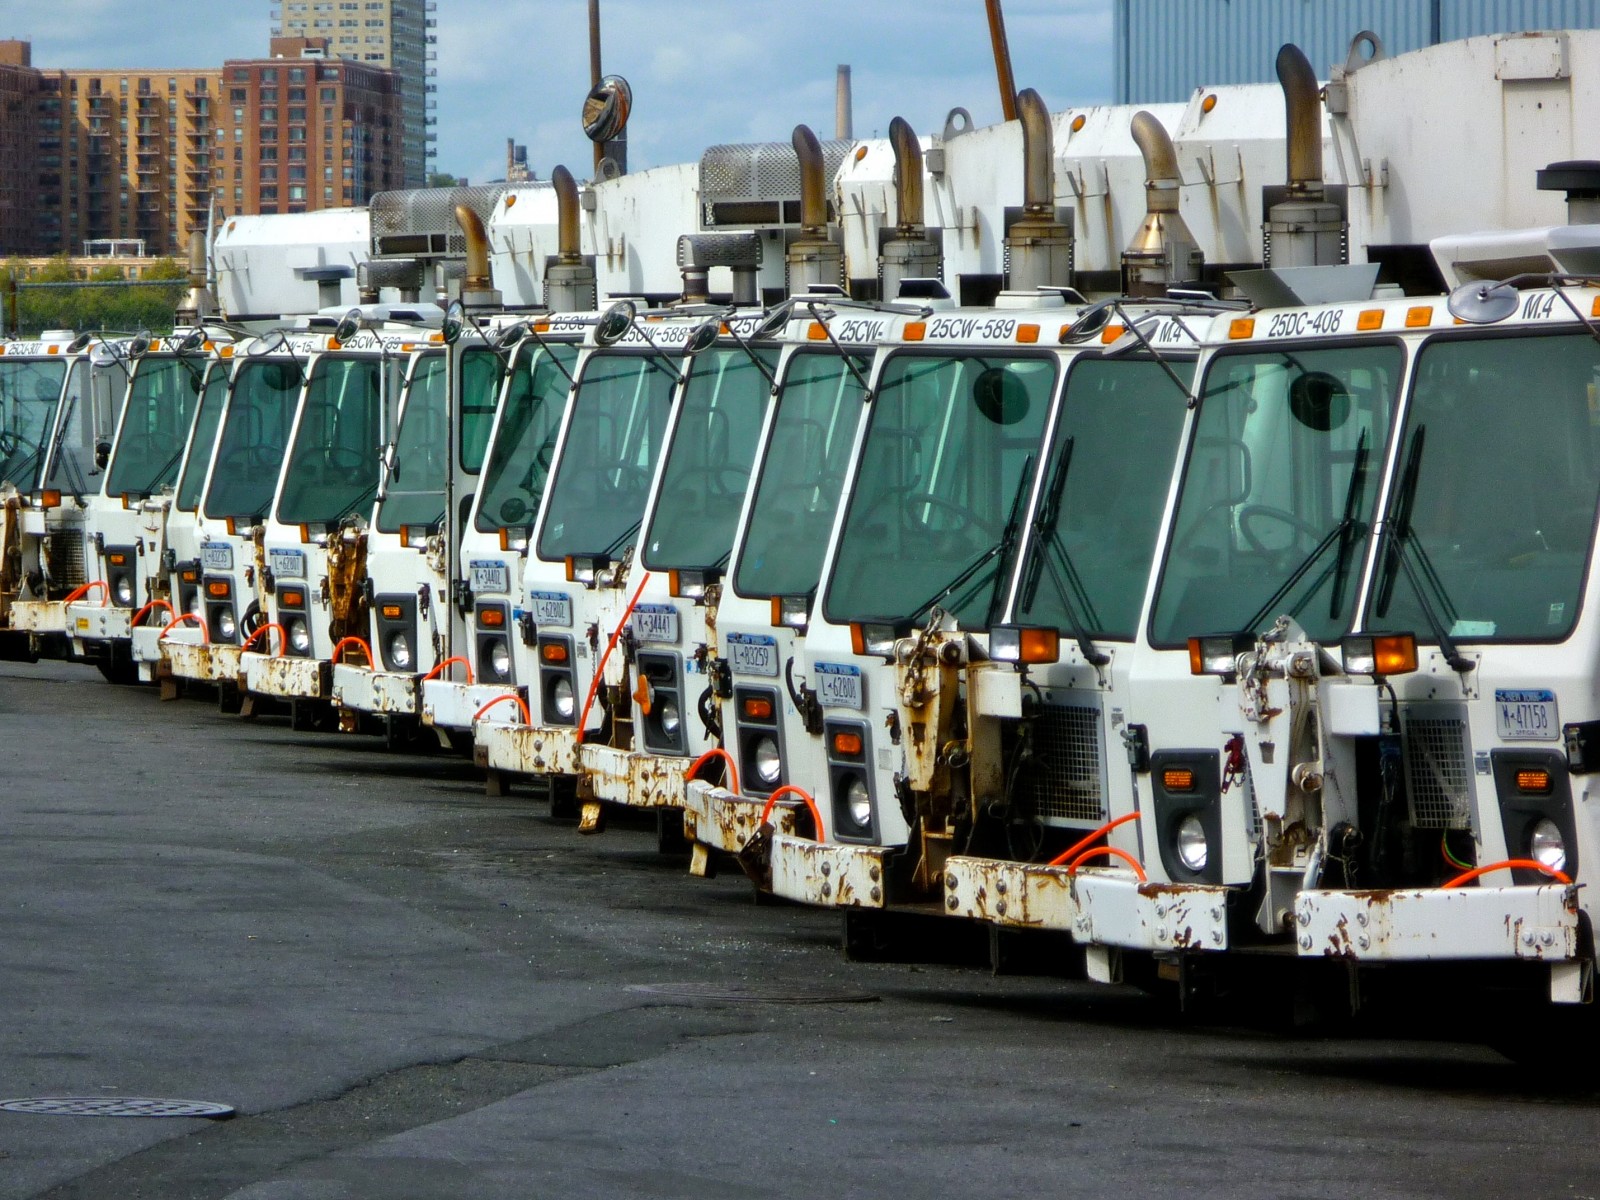 image of garbage trucks